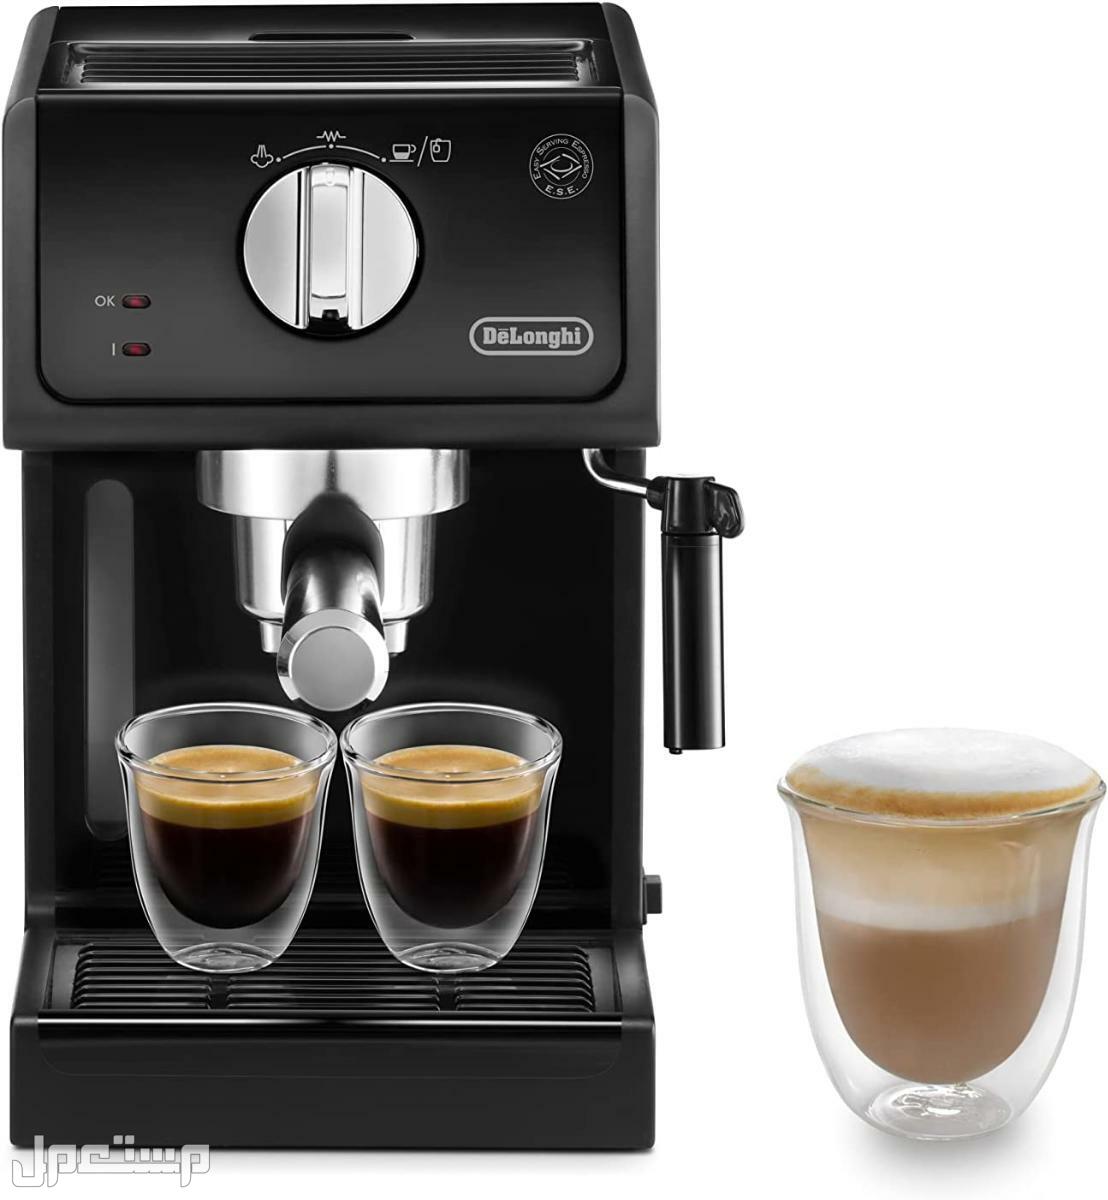 عيوب ومميزات ومواصفات وسعر ماكينة قهوة ديلونجى ديديكا في سوريا لماذا عليك شراء ماكينة قهوة ديلونجي ديديكا ؟